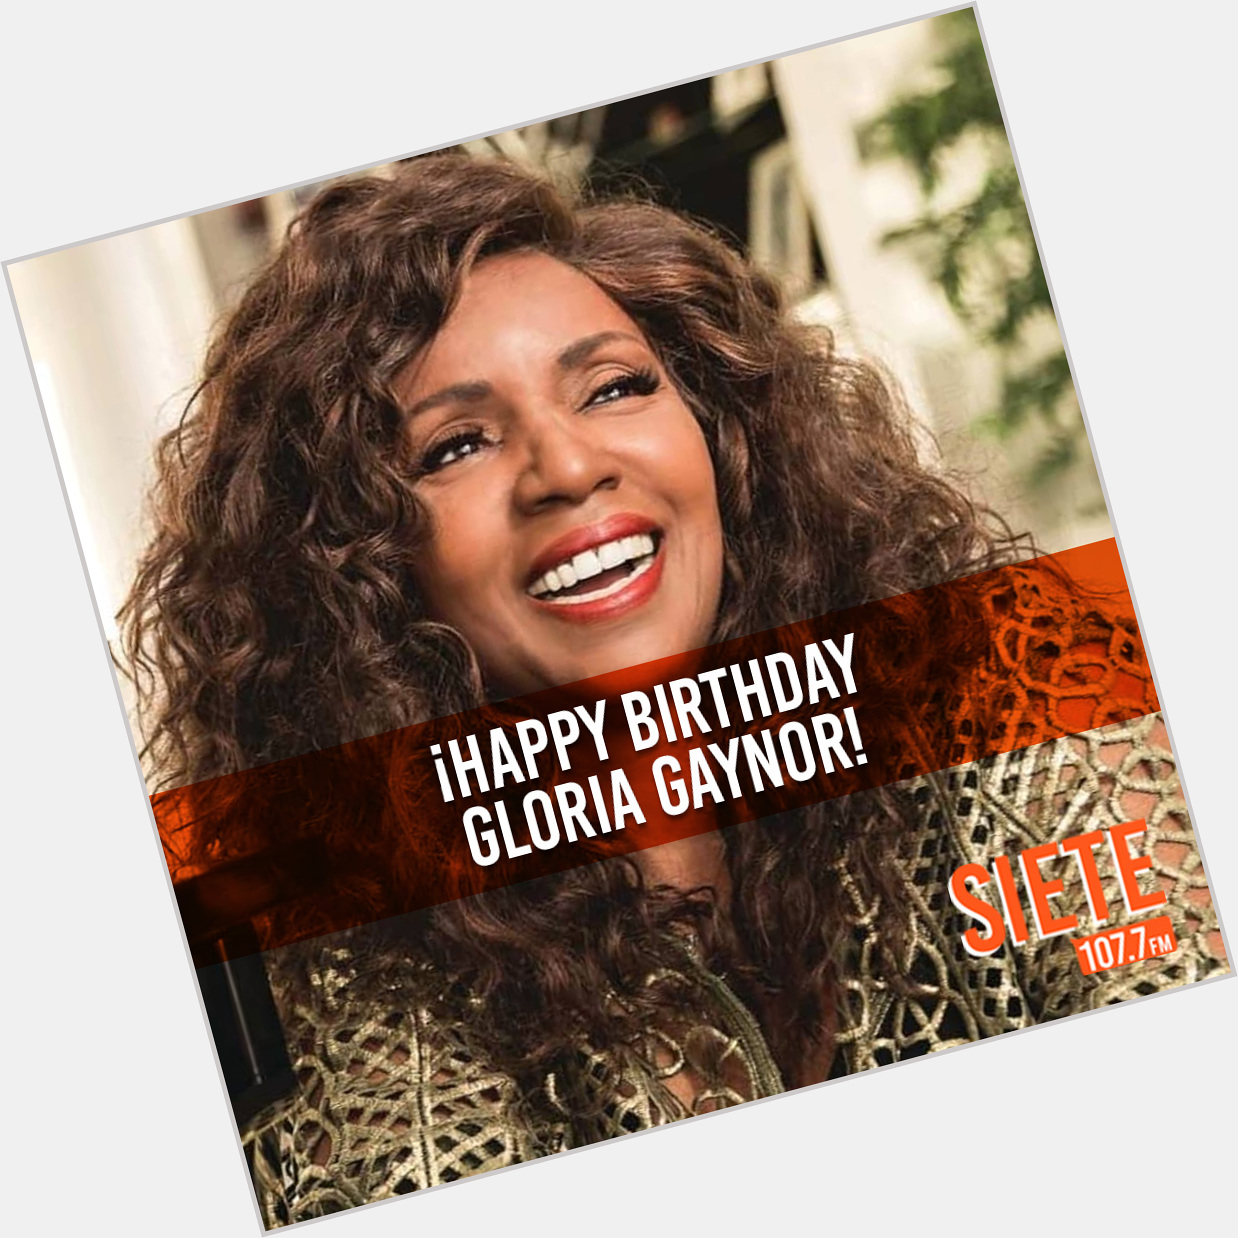 Cumple hoy 71 años la cantante de música disco y soul estadounidense Gloria Gaynor ¡Happy birthday!   